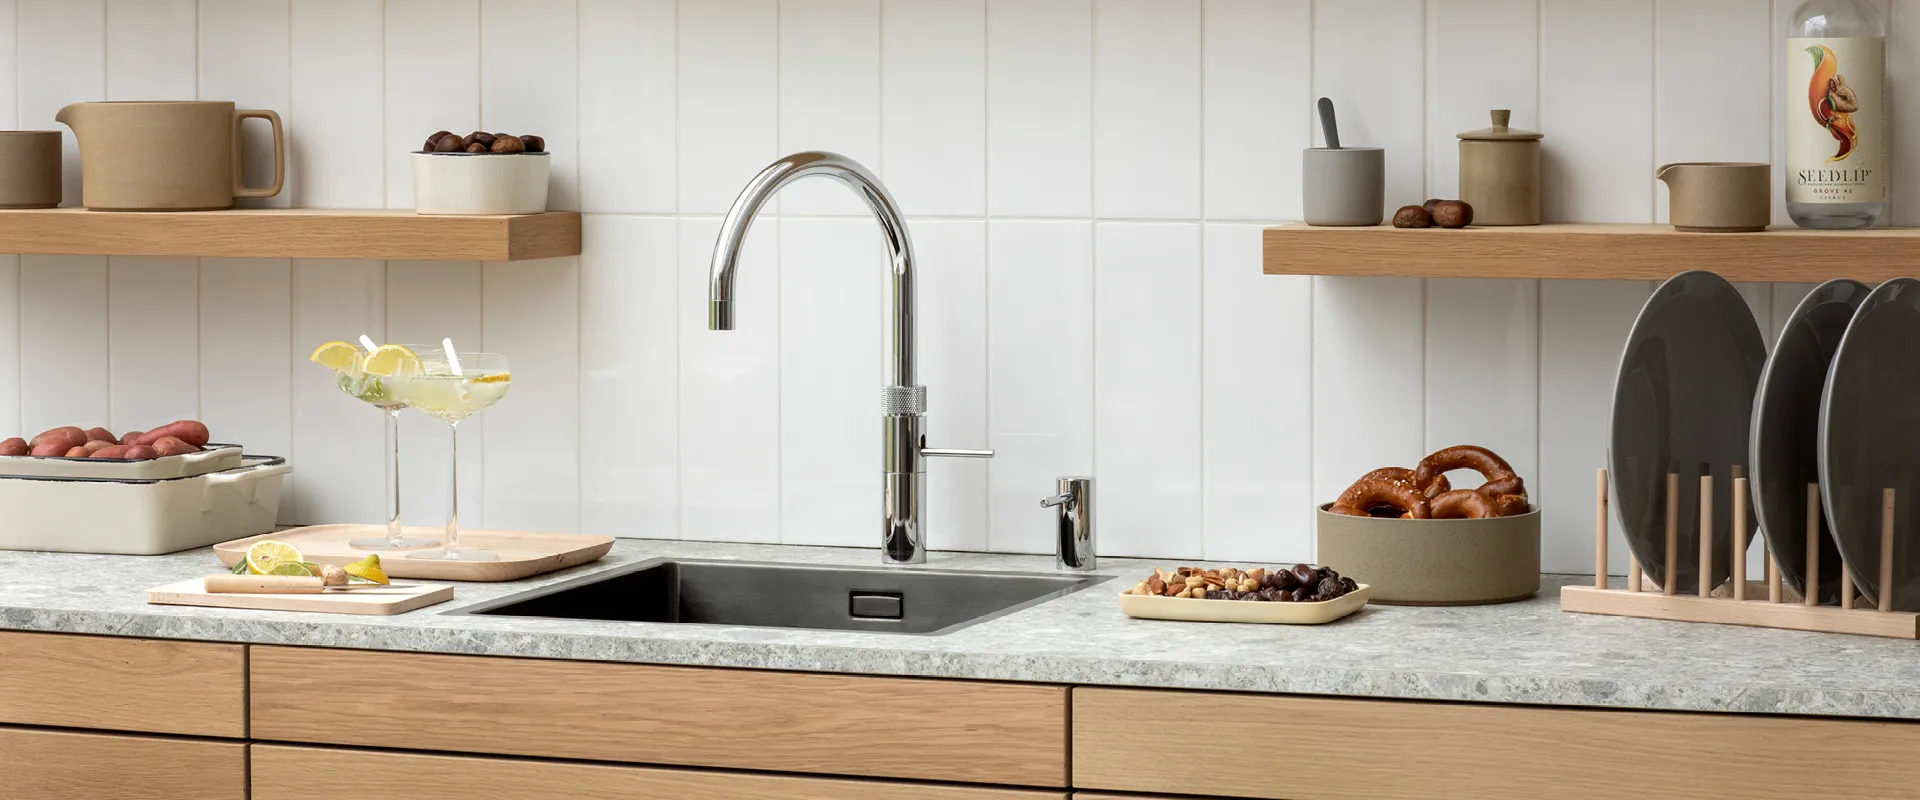 Marmor Arbeitsplatte mit Spüle und einem silbernen Wasserhahn. Moderne Küchenutensilien auf Regalbrett.